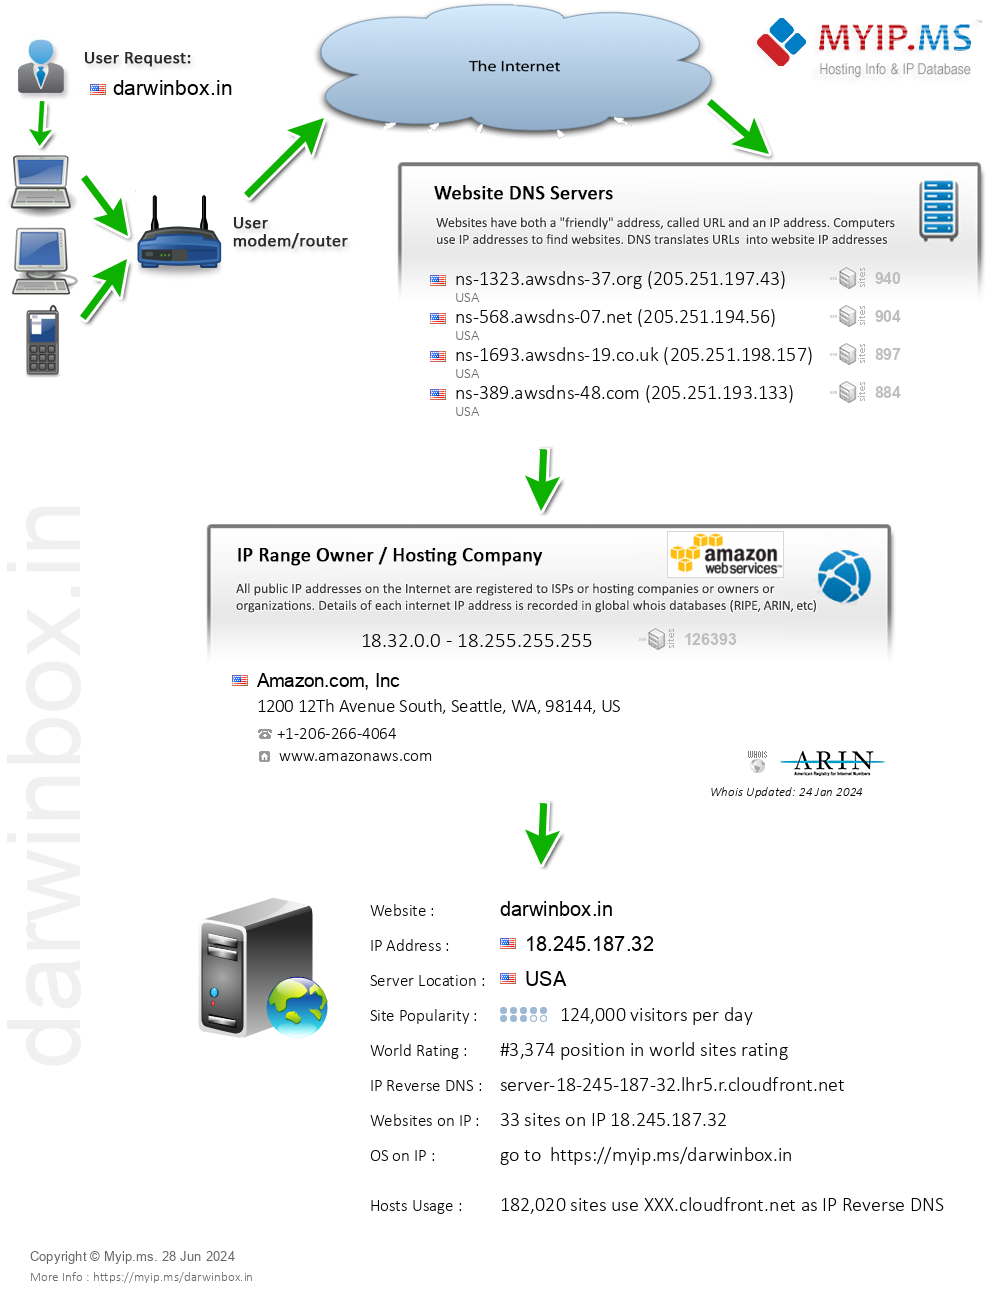 Darwinbox.in - Website Hosting Visual IP Diagram